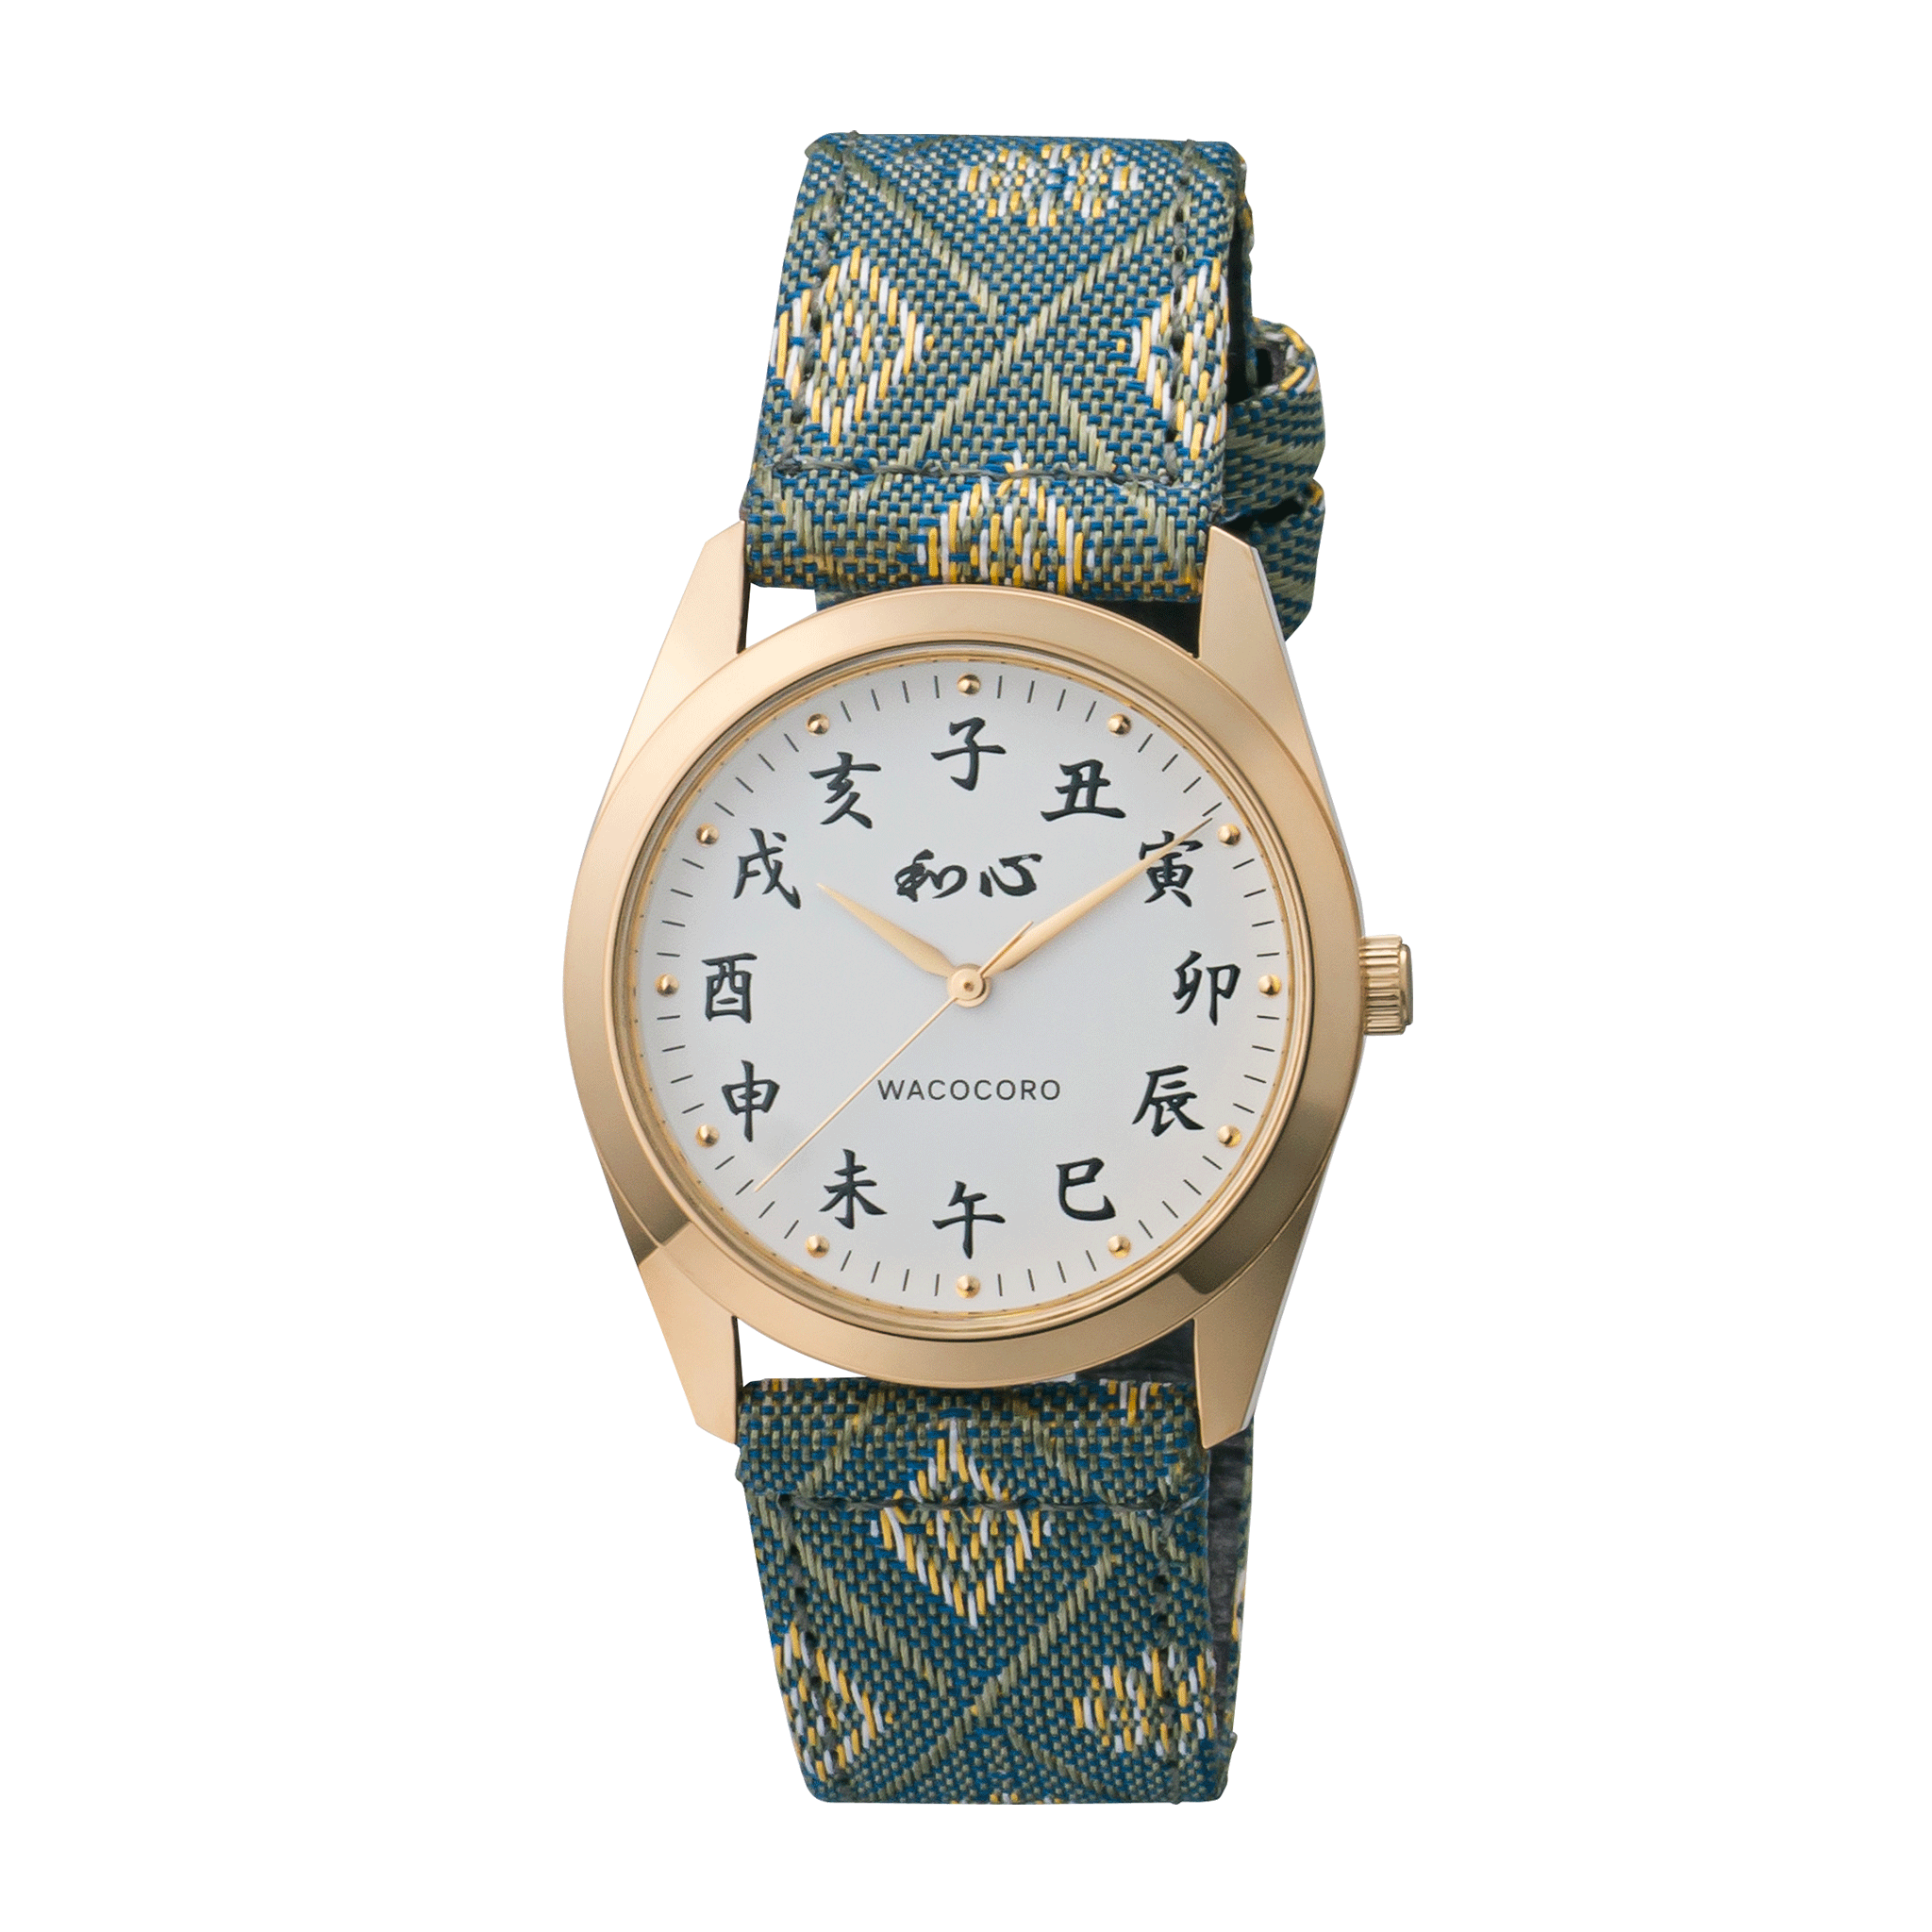 和心 伝統工芸 メンズ腕時計 畳バンド WA001M-G 日本製 【新品正規品】メンズ腕時計